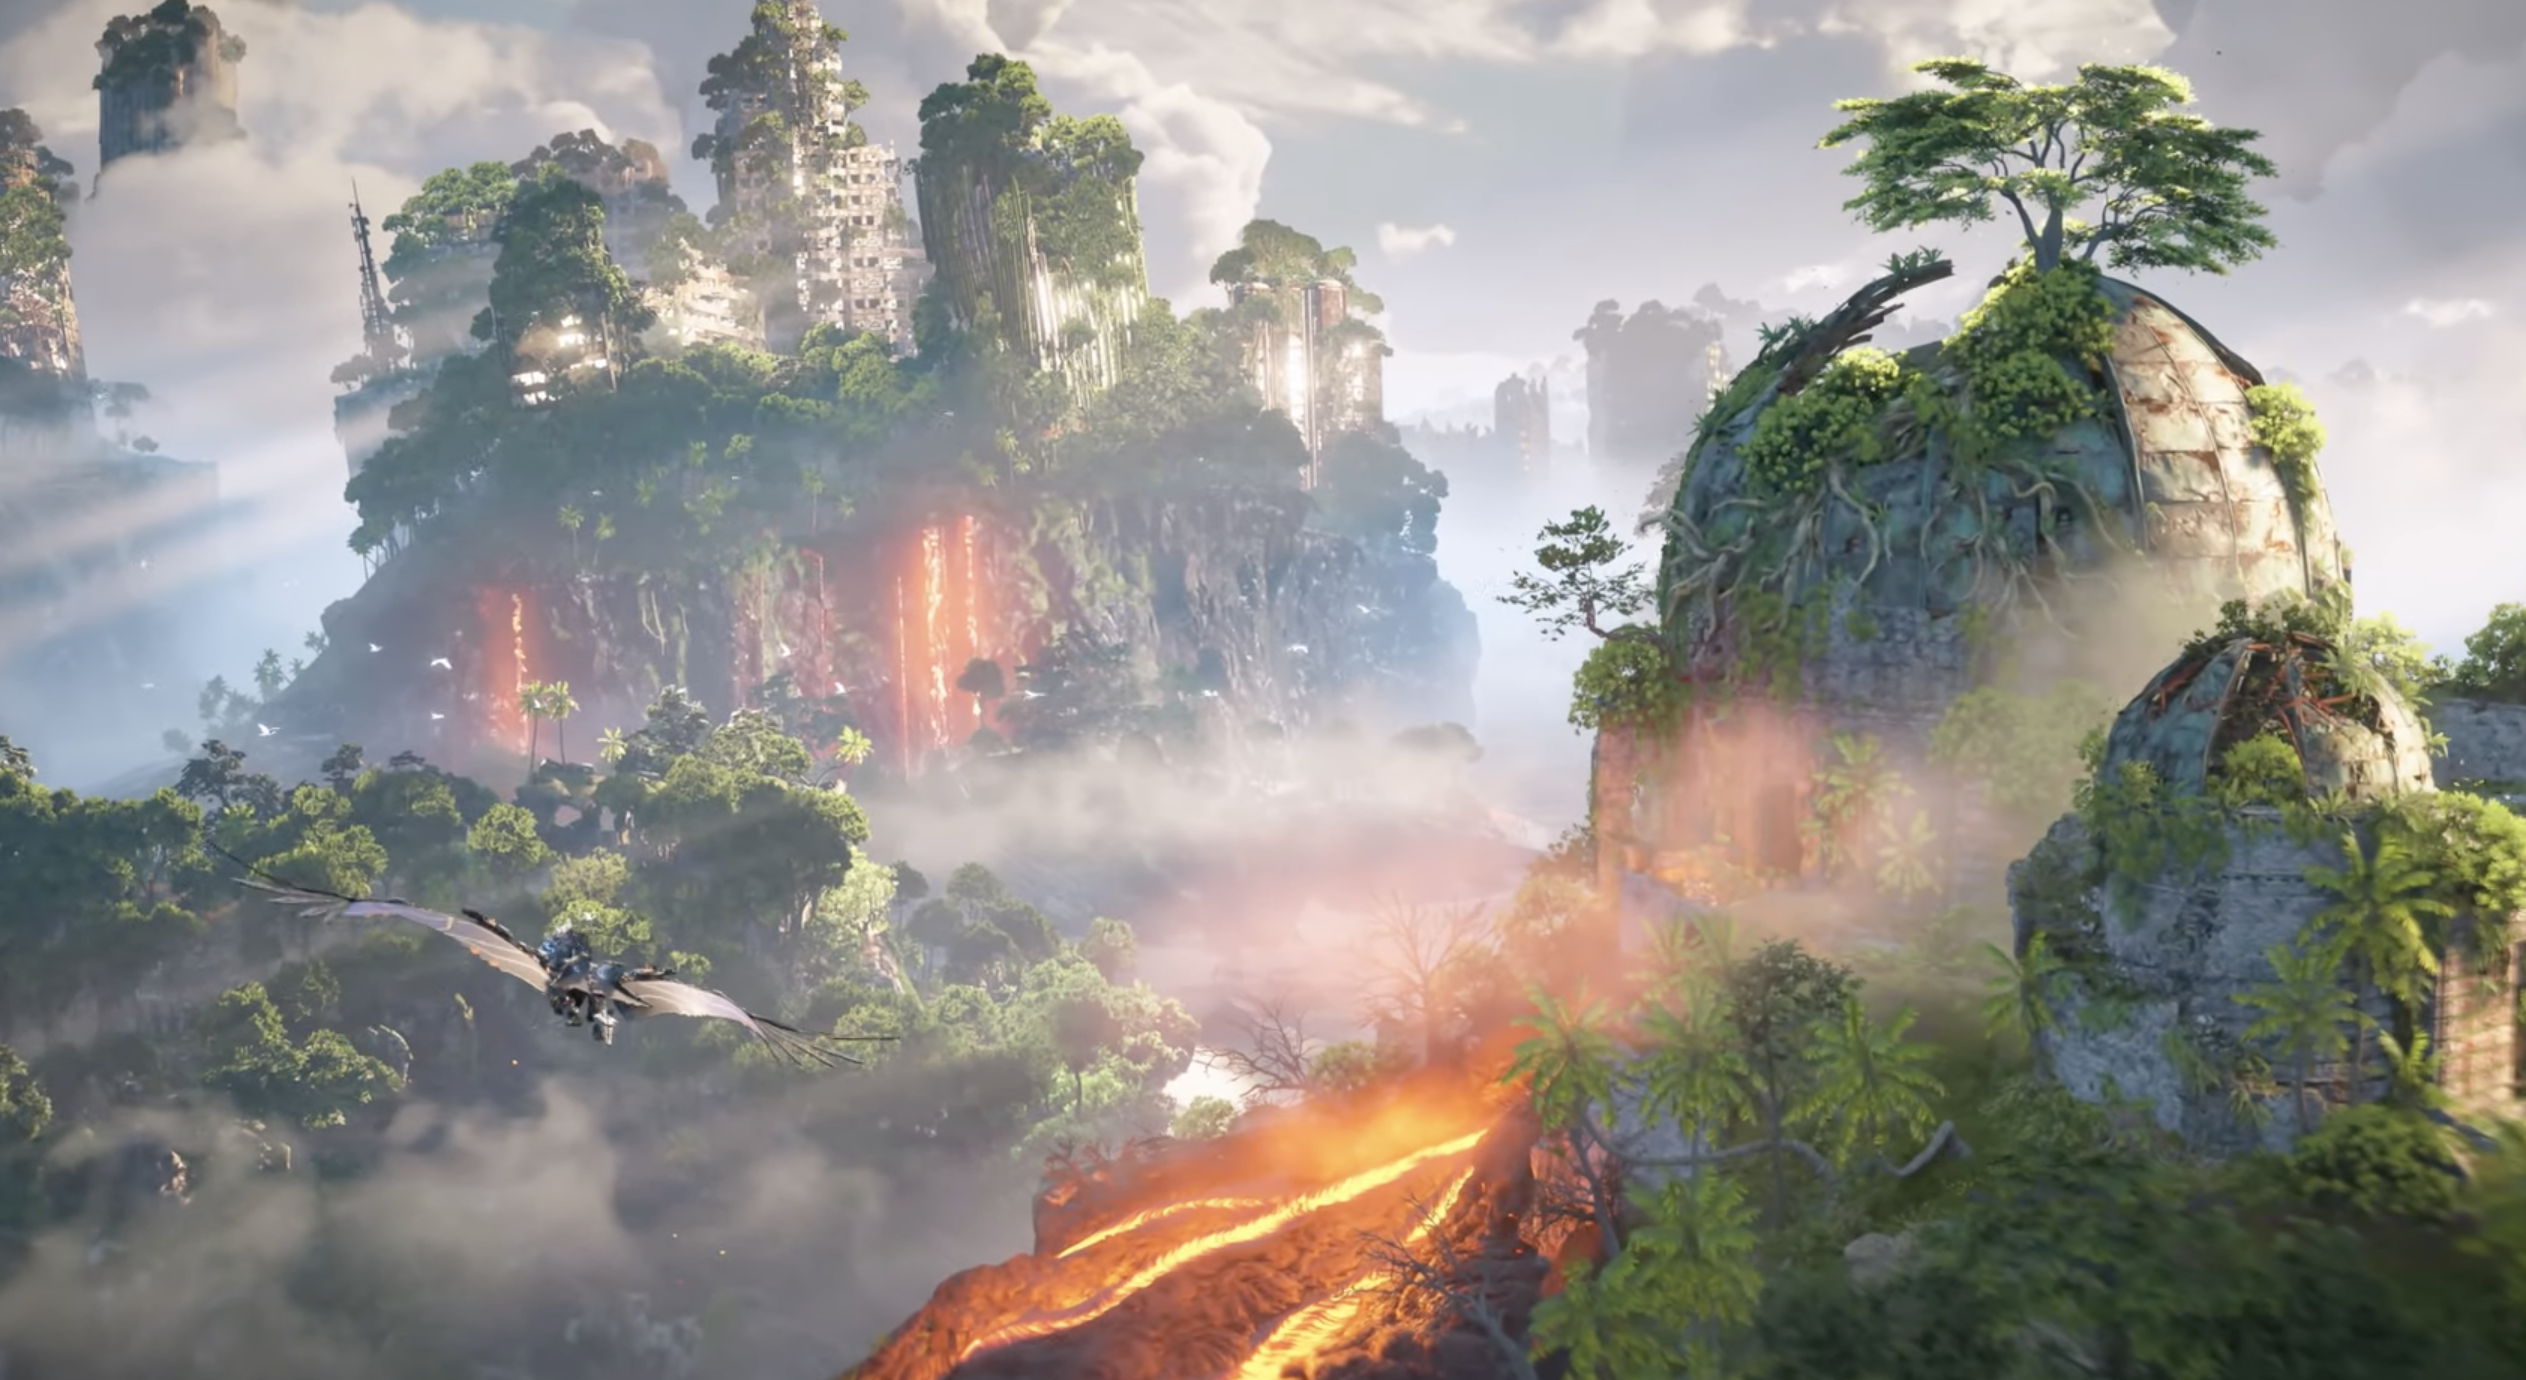 5 Storylines Horizon Forbidden West Should Explore in DLC